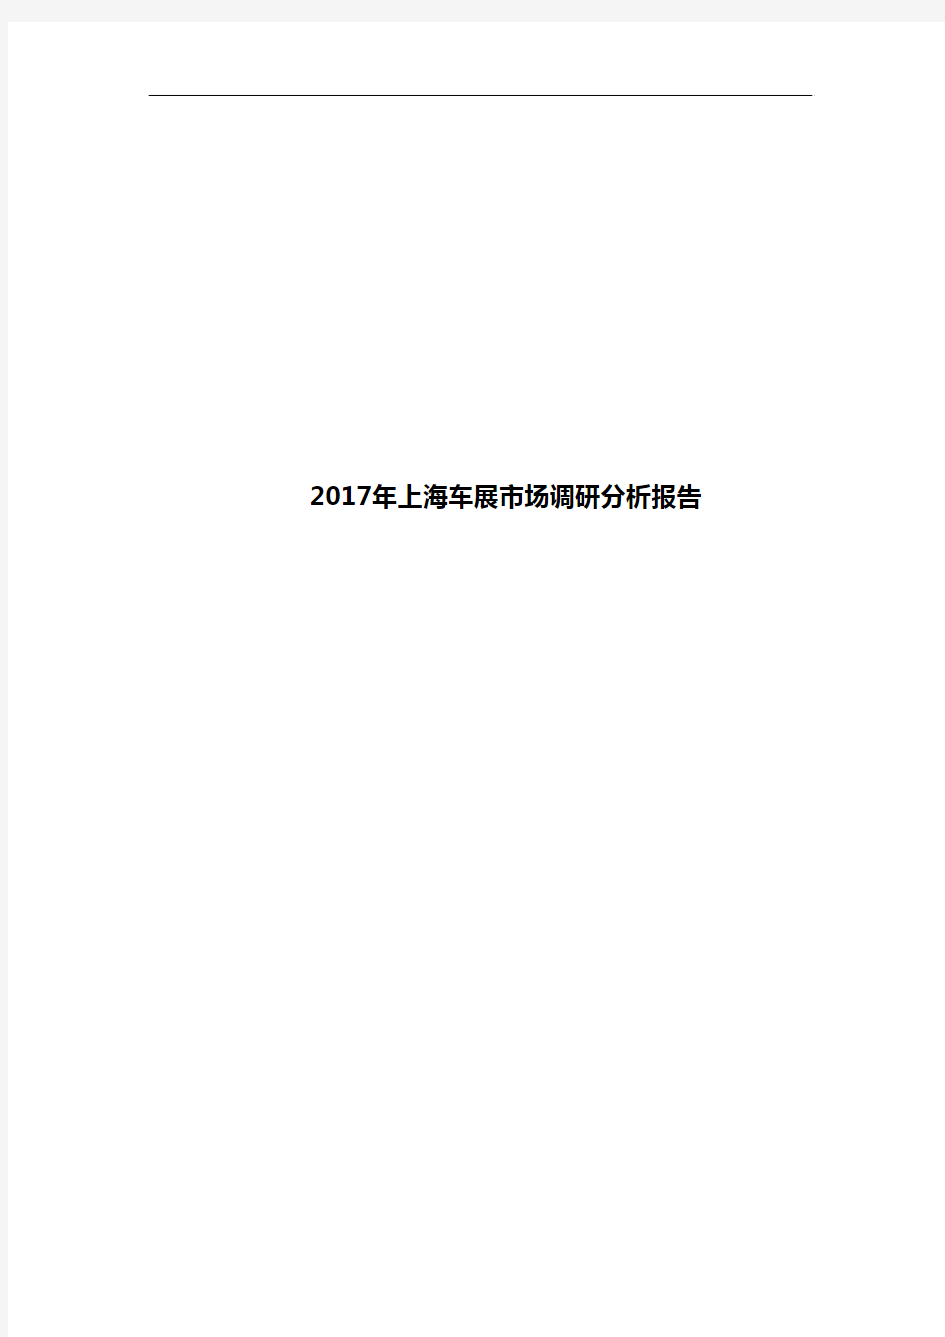 2017年上海车展市场调研分析报告